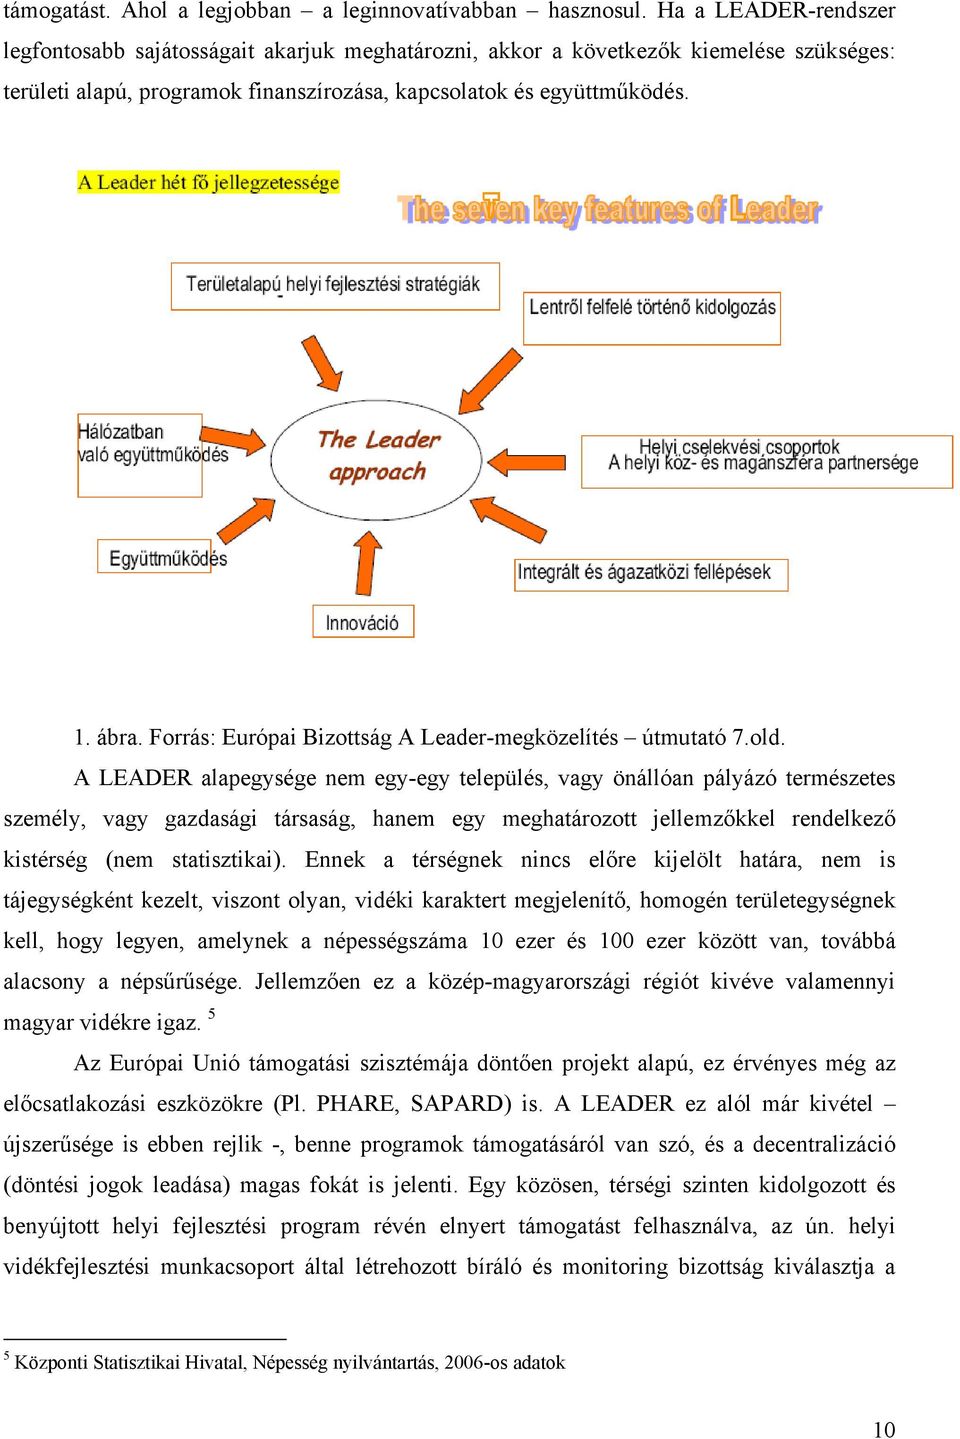 Forrás: Európai Bizottság A Leader-megközelítés útmutató 7.old.